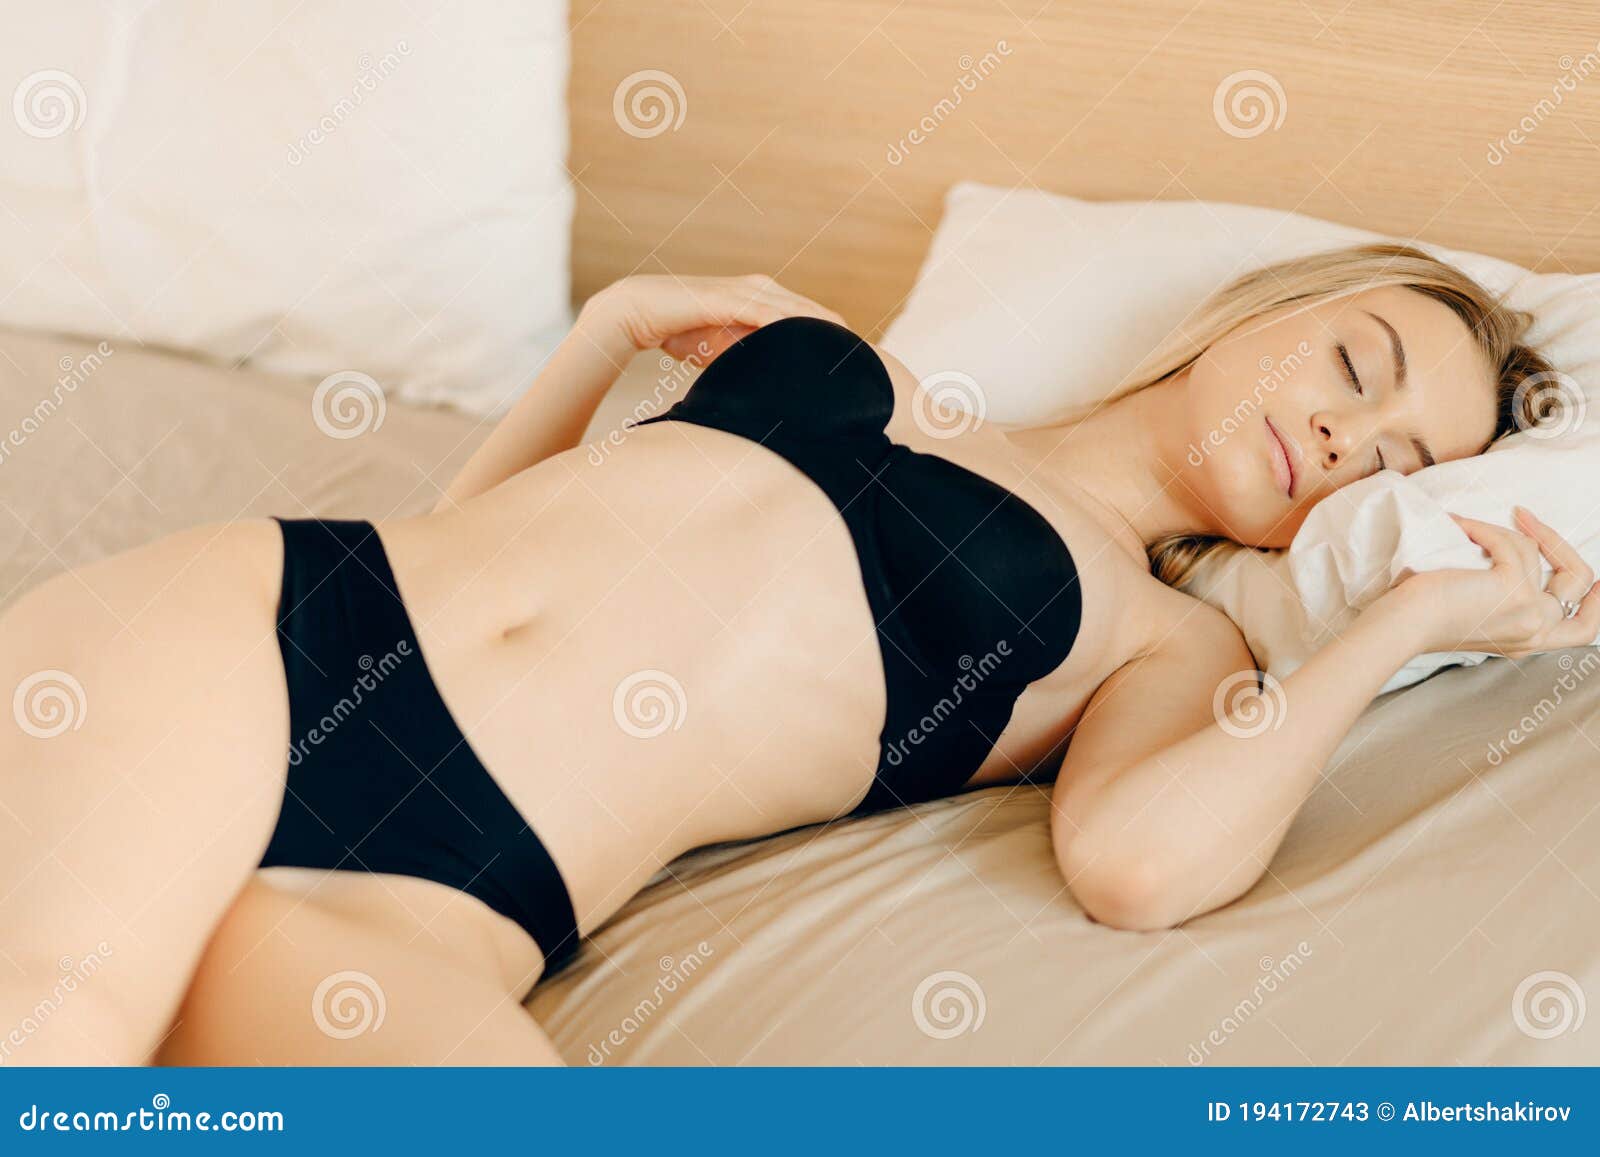 Mujer Con Ropa Interior Durmiendo En Cama En Una Pose Sin Manta. Imagen de archivo - Imagen de retrato: 194172743